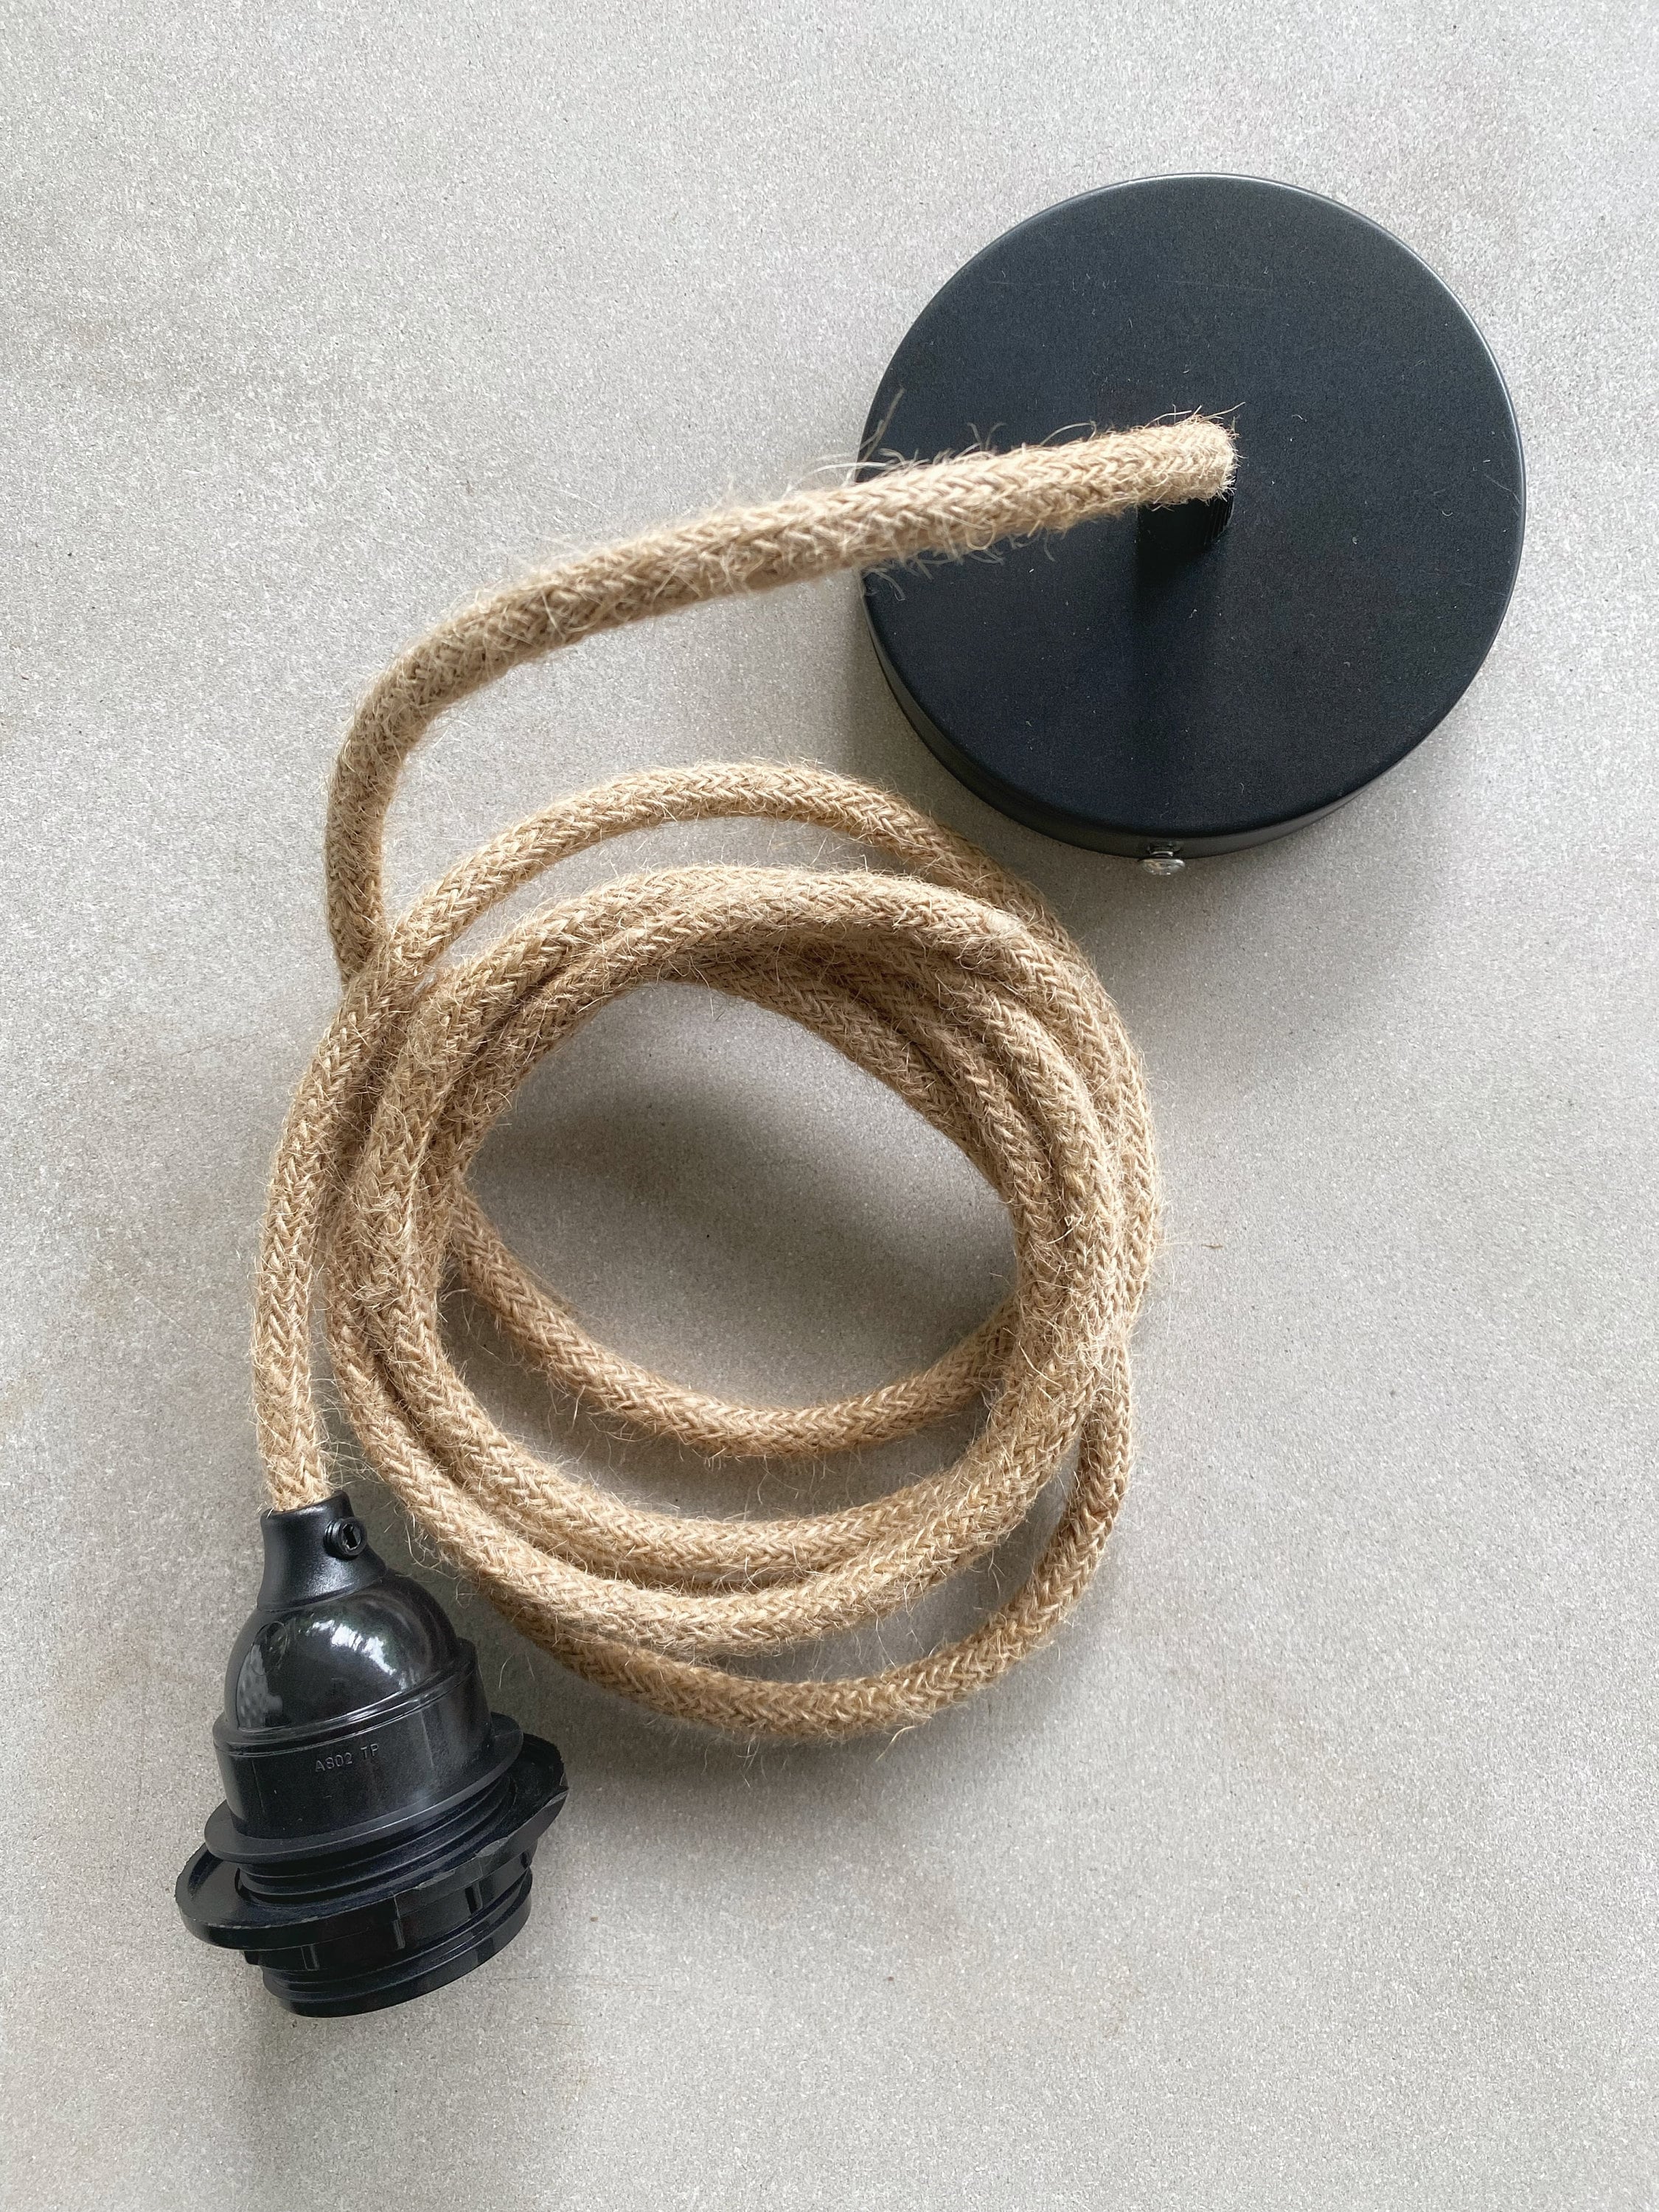 Kit lampe de chevet ou bureau à personnaliser douille bakélite à vis E14  spécifique abat-jour, câble textile et interrupteur-Réf KITBe14 -   Canada